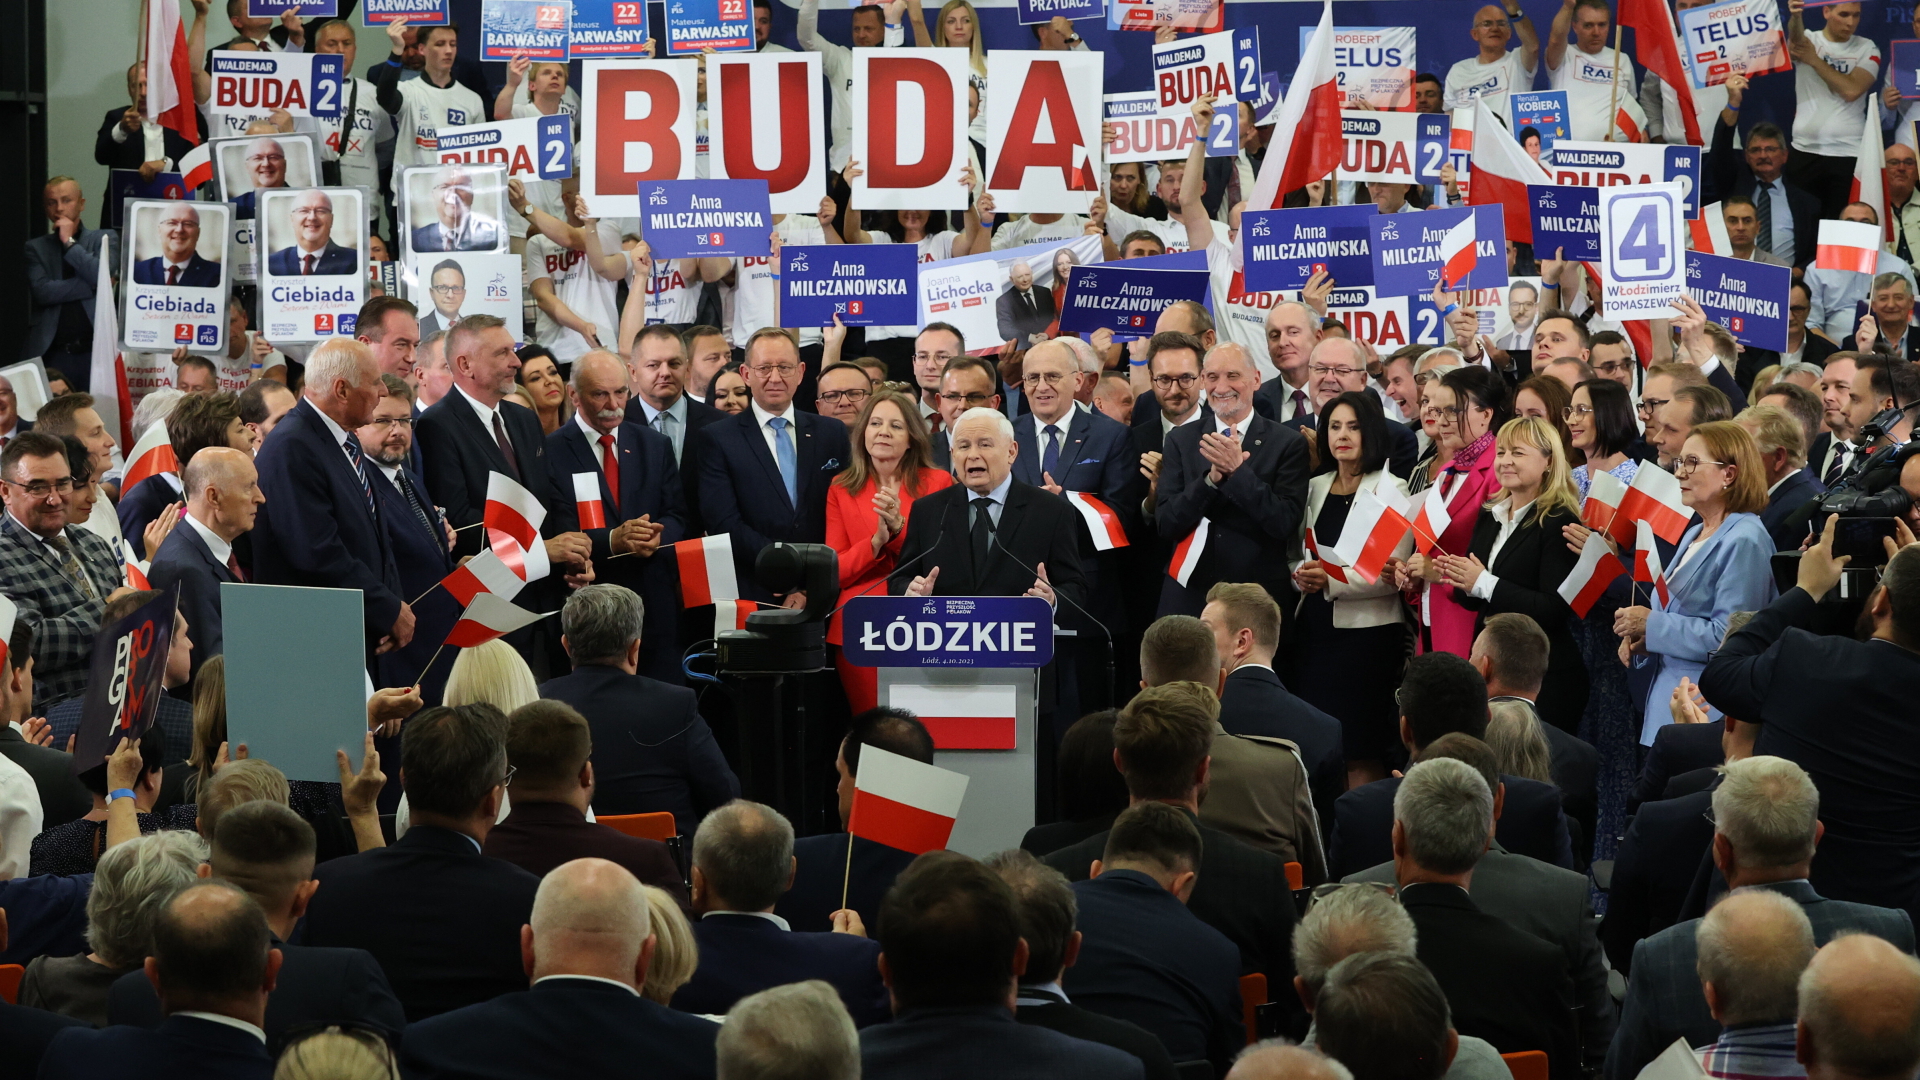 Jaroslaw Kaczynski bei einer Wahlkampfveranstaltung